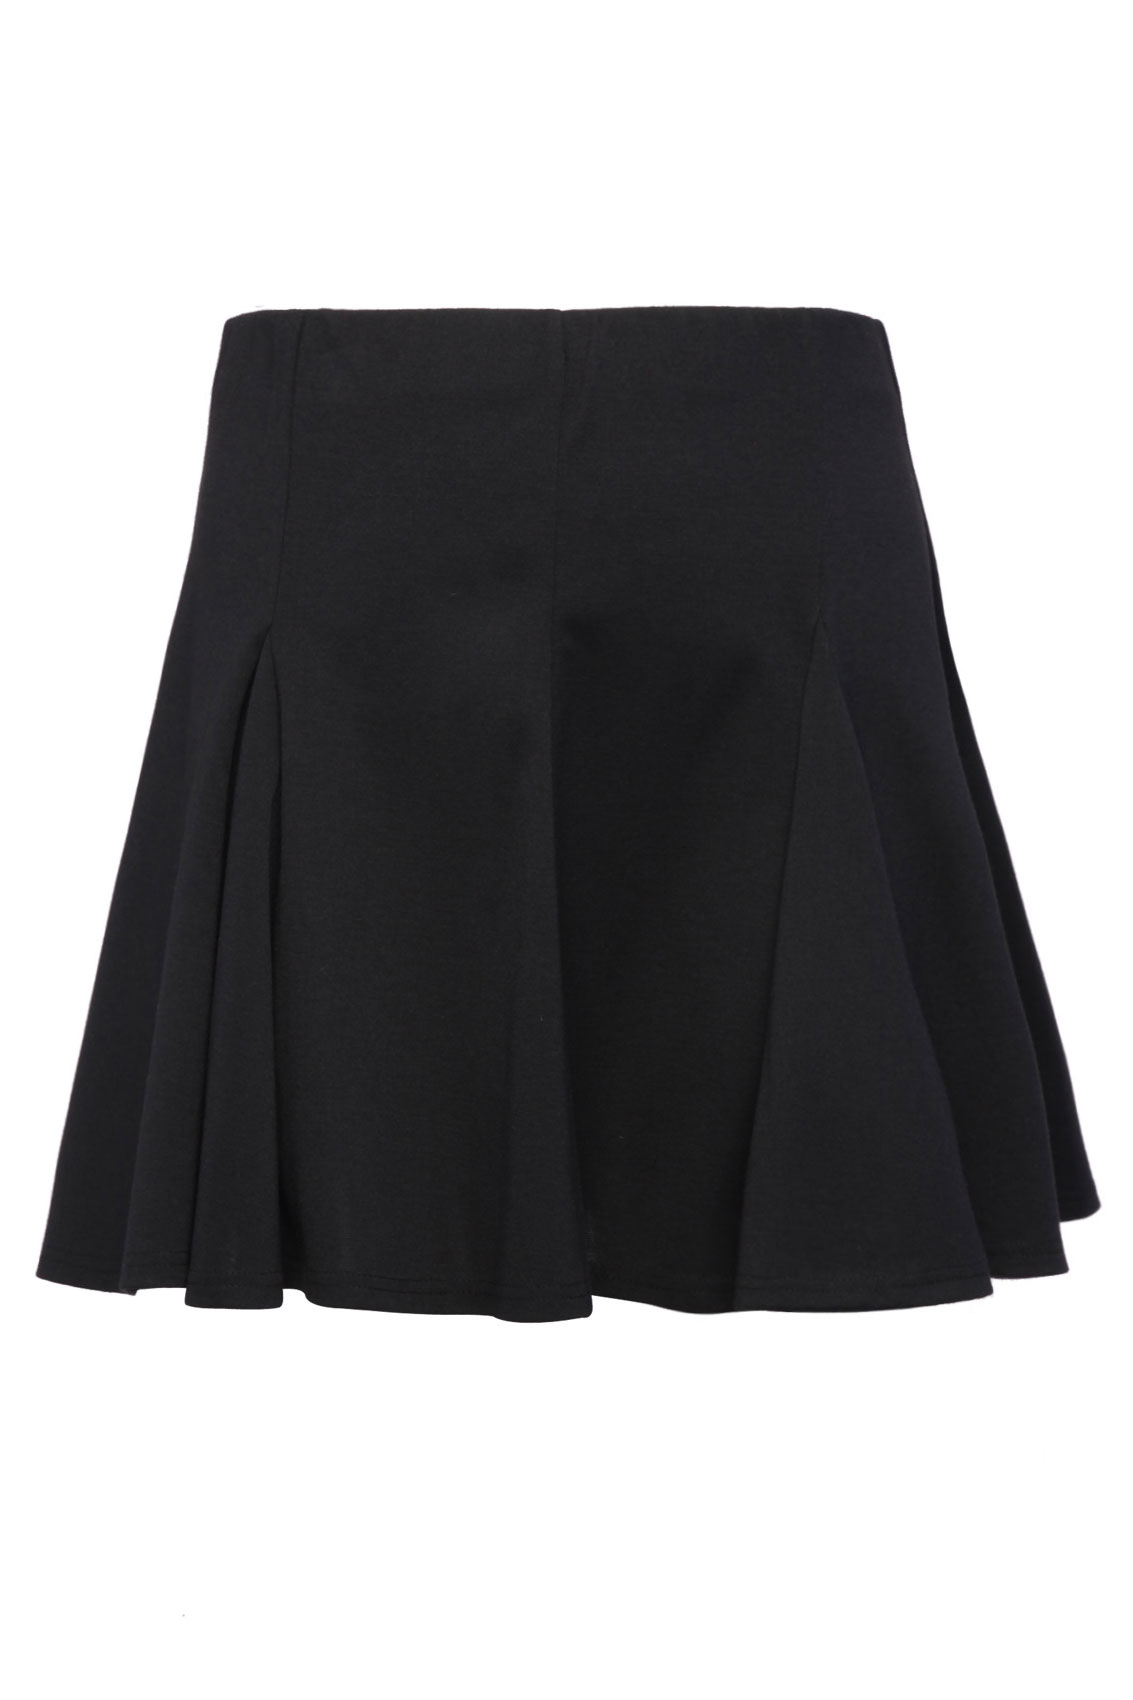 Black Godet Skater Skirt plus size 16,18,20,22,24,26,28